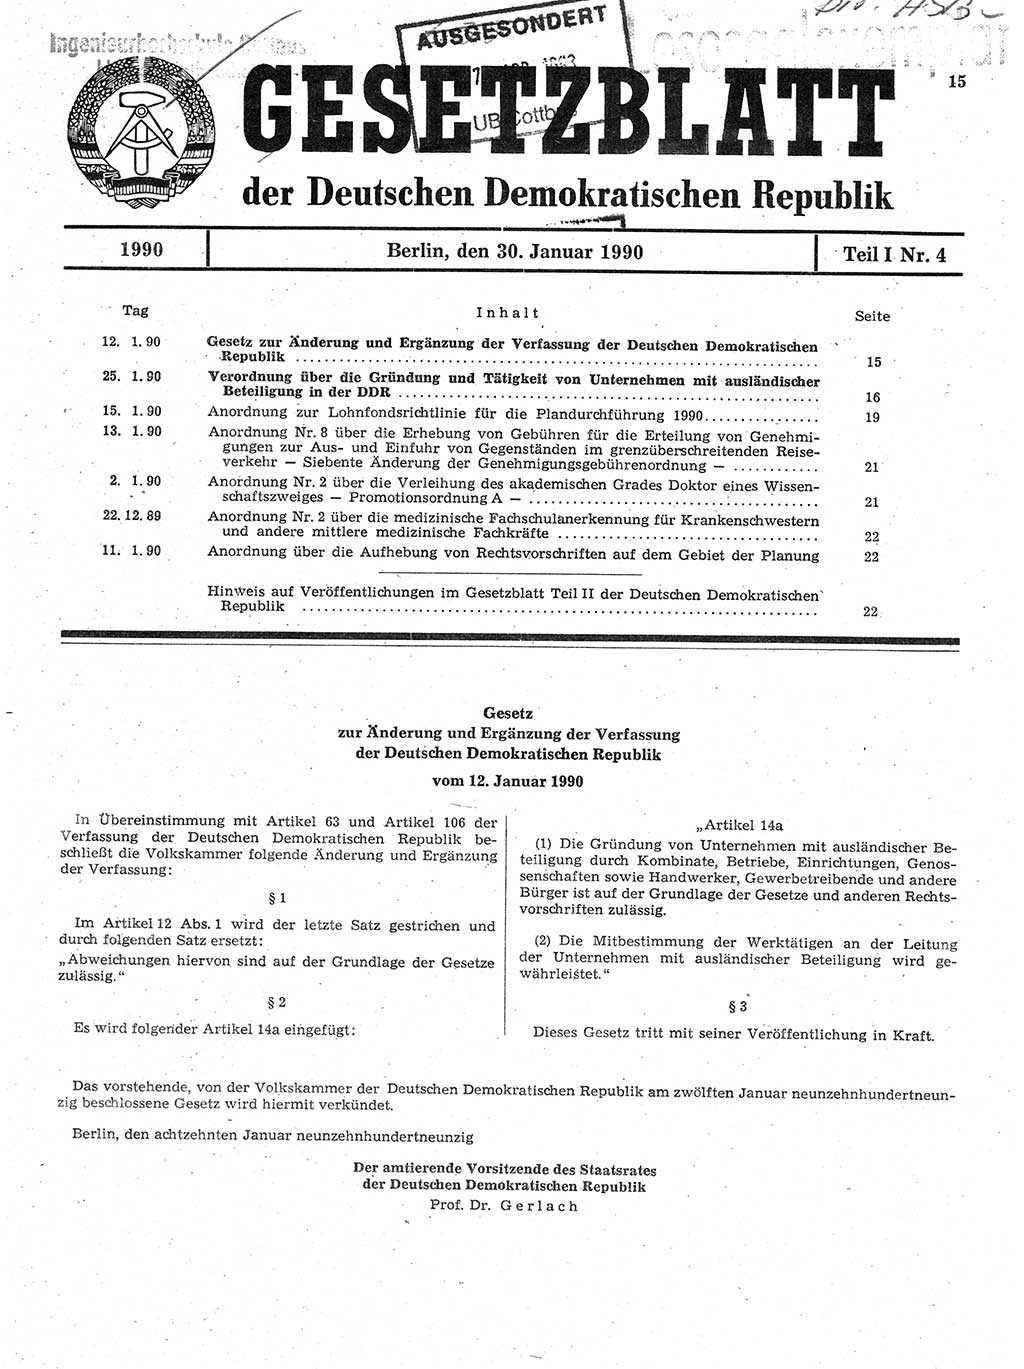 Gesetzblatt (GBl.) der Deutschen Demokratischen Republik (DDR) Teil Ⅰ 1990, Seite 15 (GBl. DDR Ⅰ 1990, S. 15)